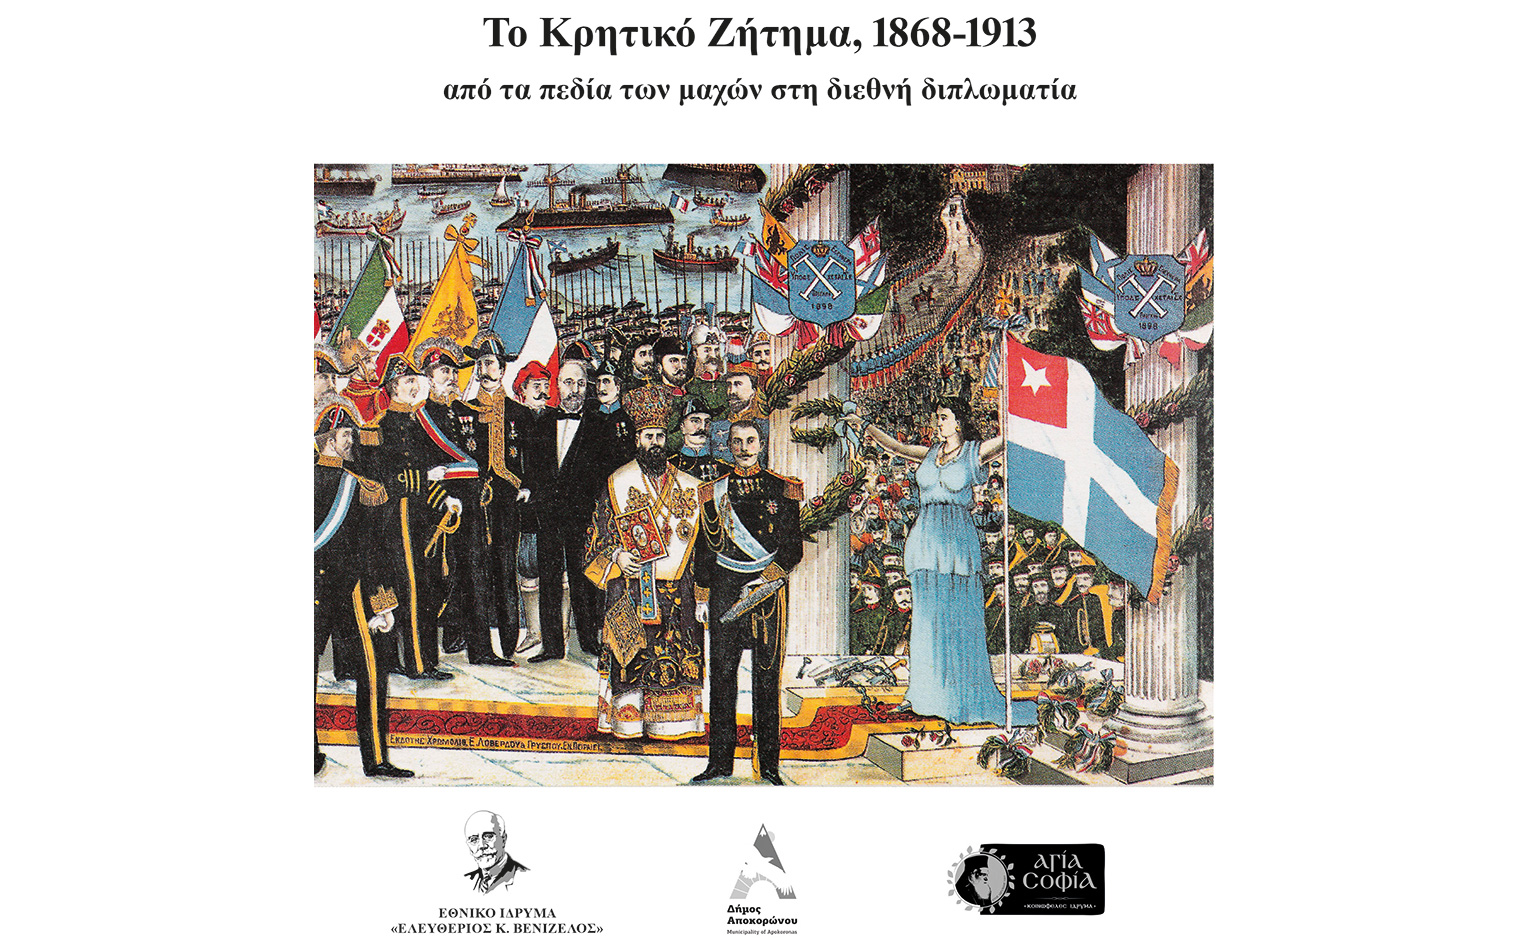 Εκδόθηκε «Το Κρητικό Ζήτημα 1868-1913 από τα πεδία των μαχών στη διεθνή διπλωματία»